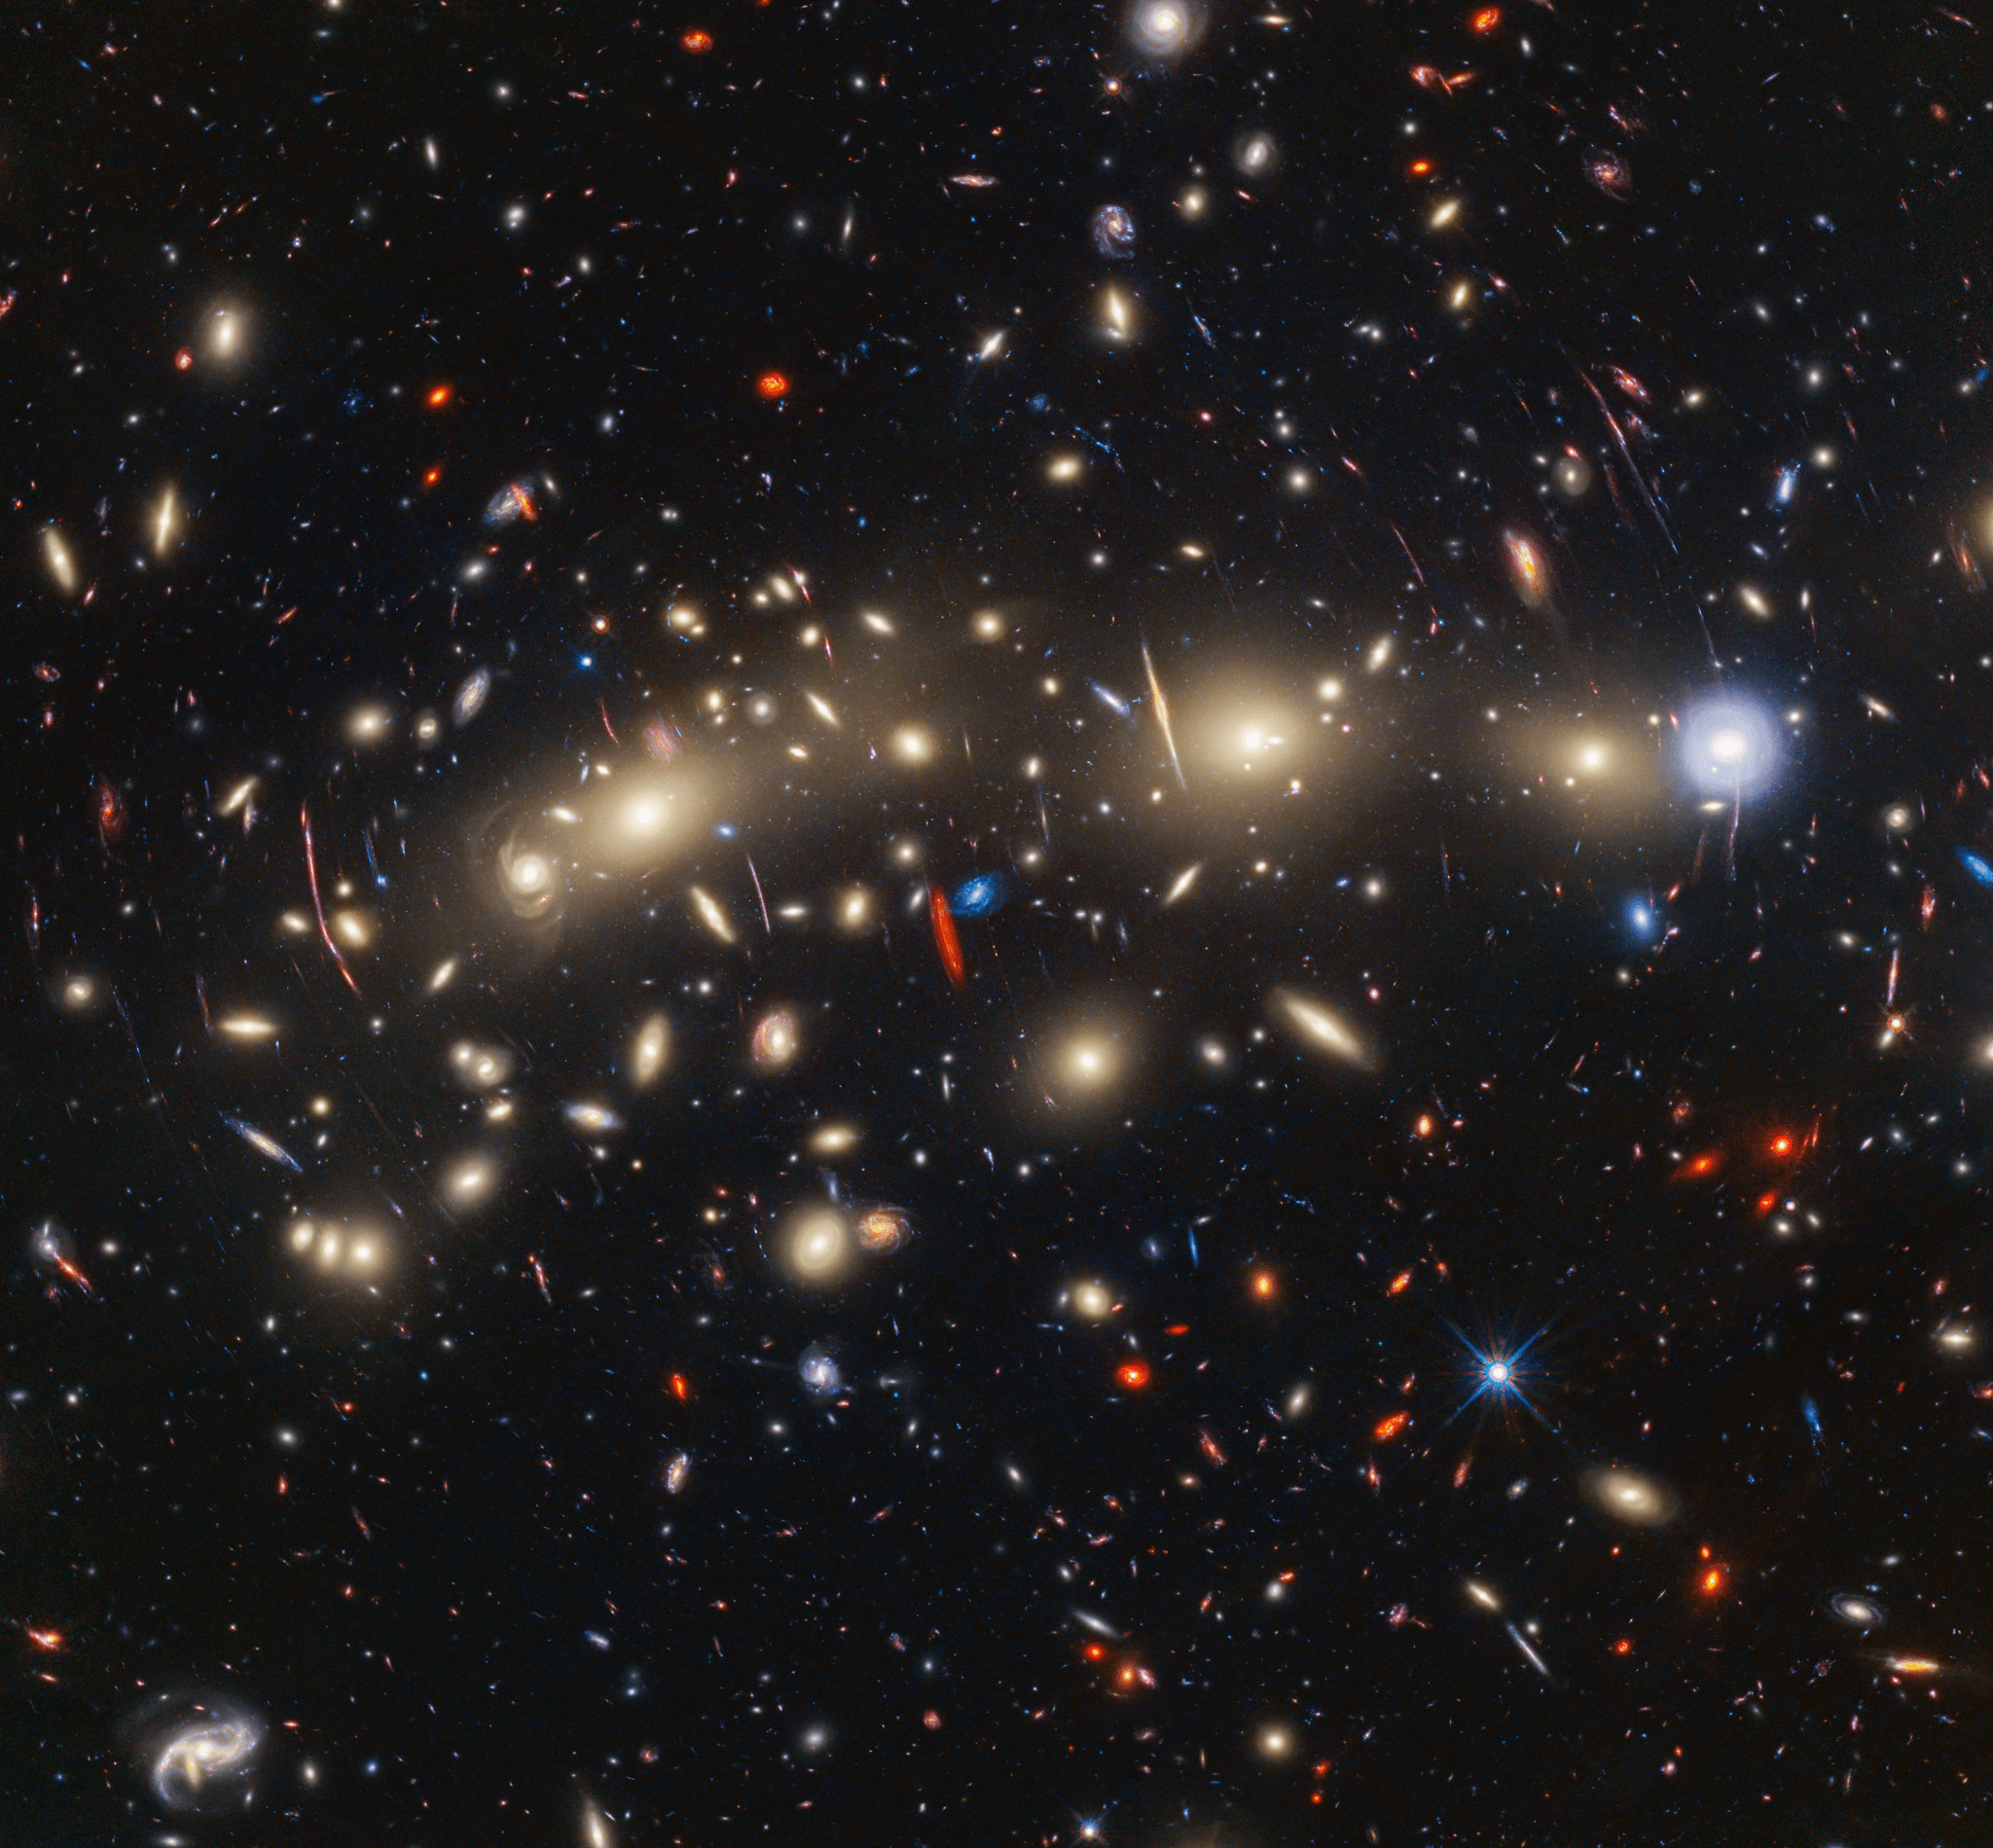 Un campo di galassie sullo sfondo nero dello spazio.  Al centro, da sinistra a destra, c'è una raccolta di dozzine di galassie a spirale ed ellittiche giallastre che formano un ammasso di galassie in primo piano.  Tra questi ci sono caratteristiche lineari distorte, che per lo più sembrano seguire cerchi concentrici invisibili che curvano attorno al centro dell'immagine.